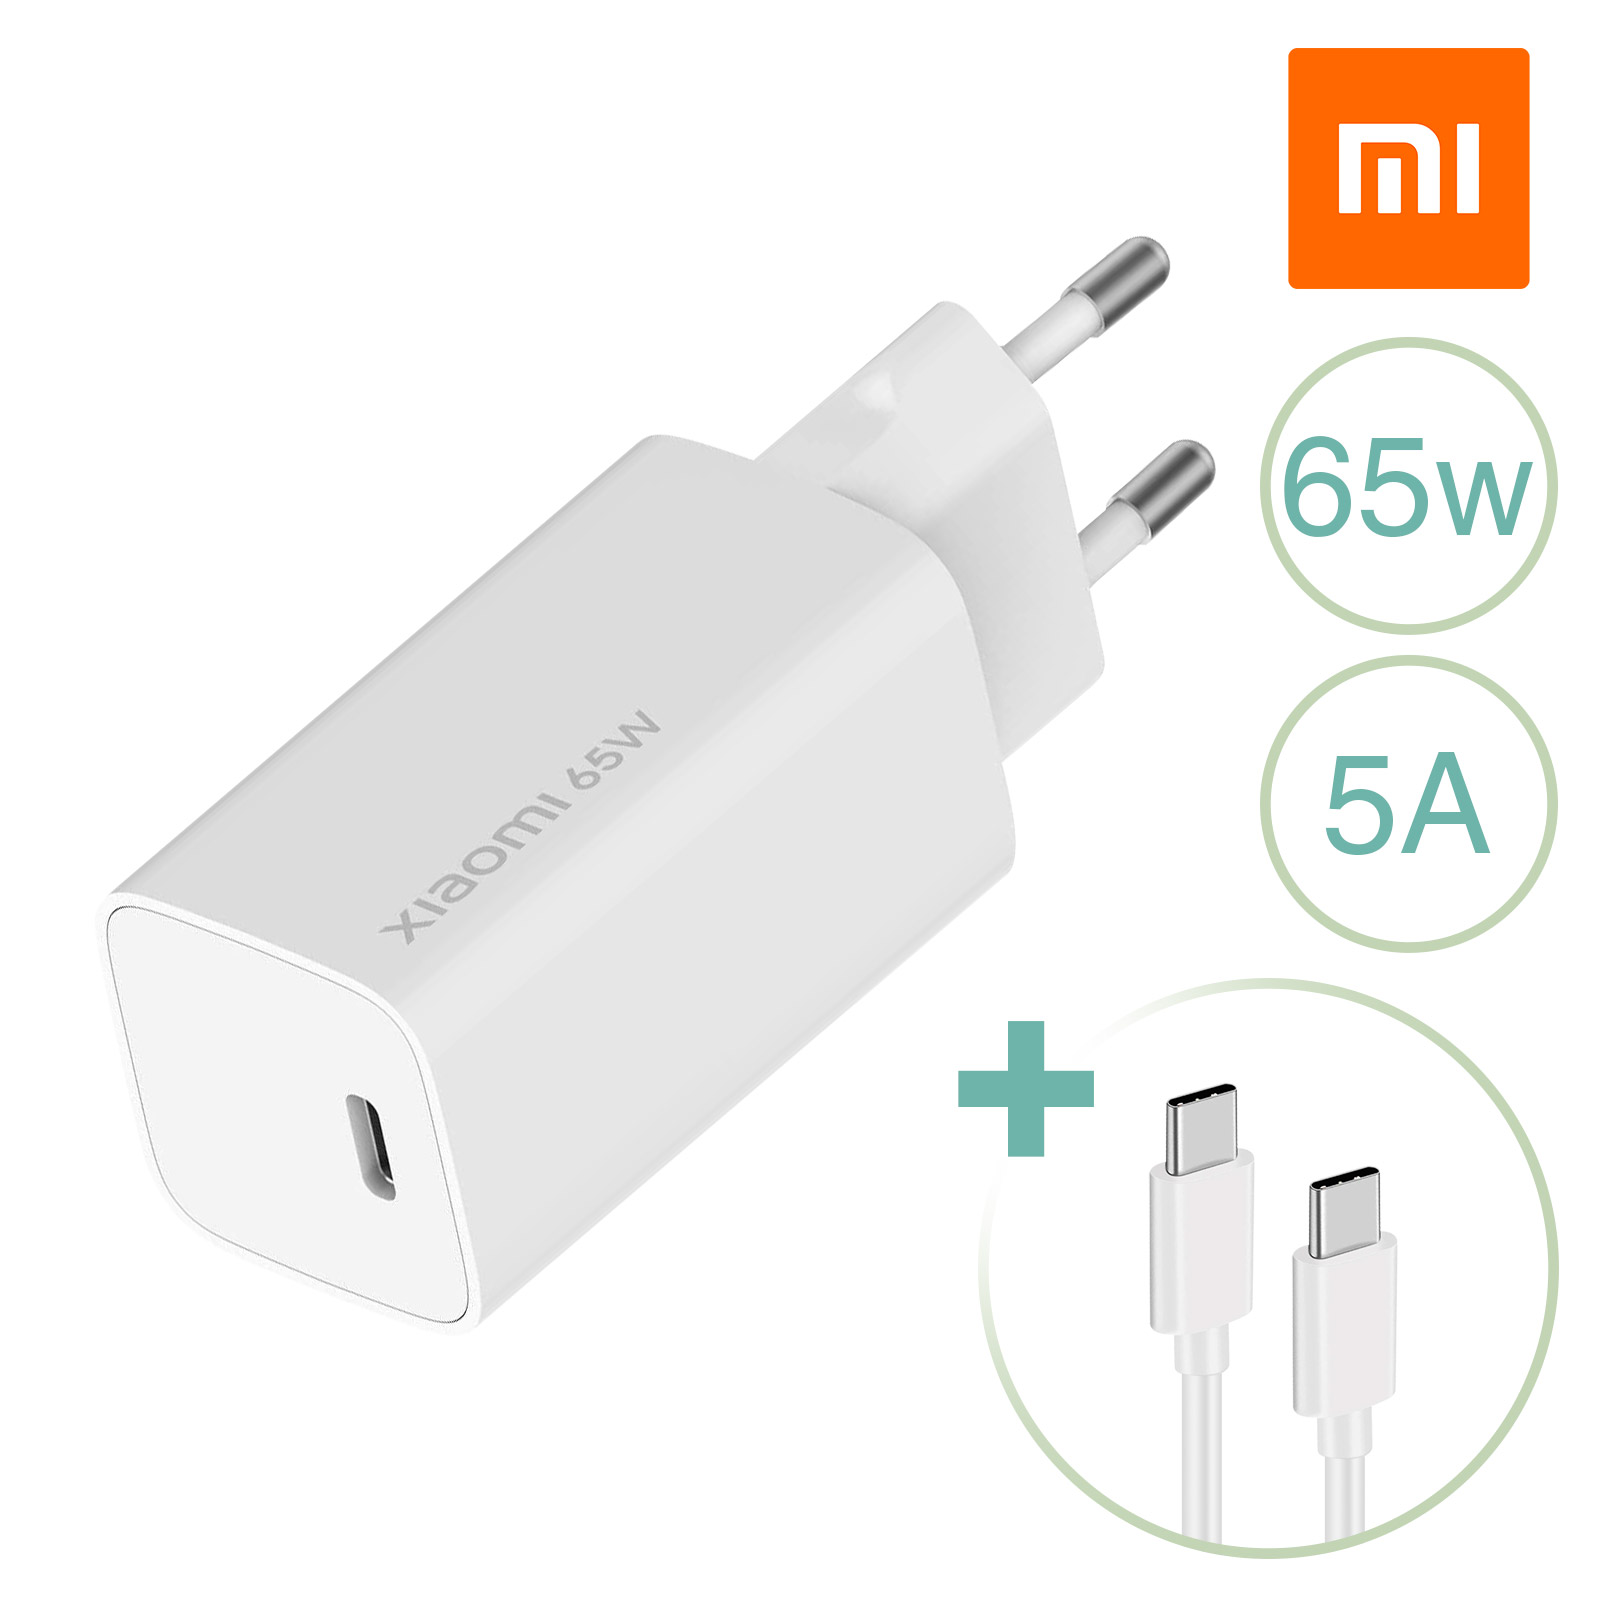 Chargeur GaN USB C 65W 5A Xiaomi, Charge Ultra-rapide + Câble USB C - Blanc  pour Ordinateur Portable, Macbook, Notebook…